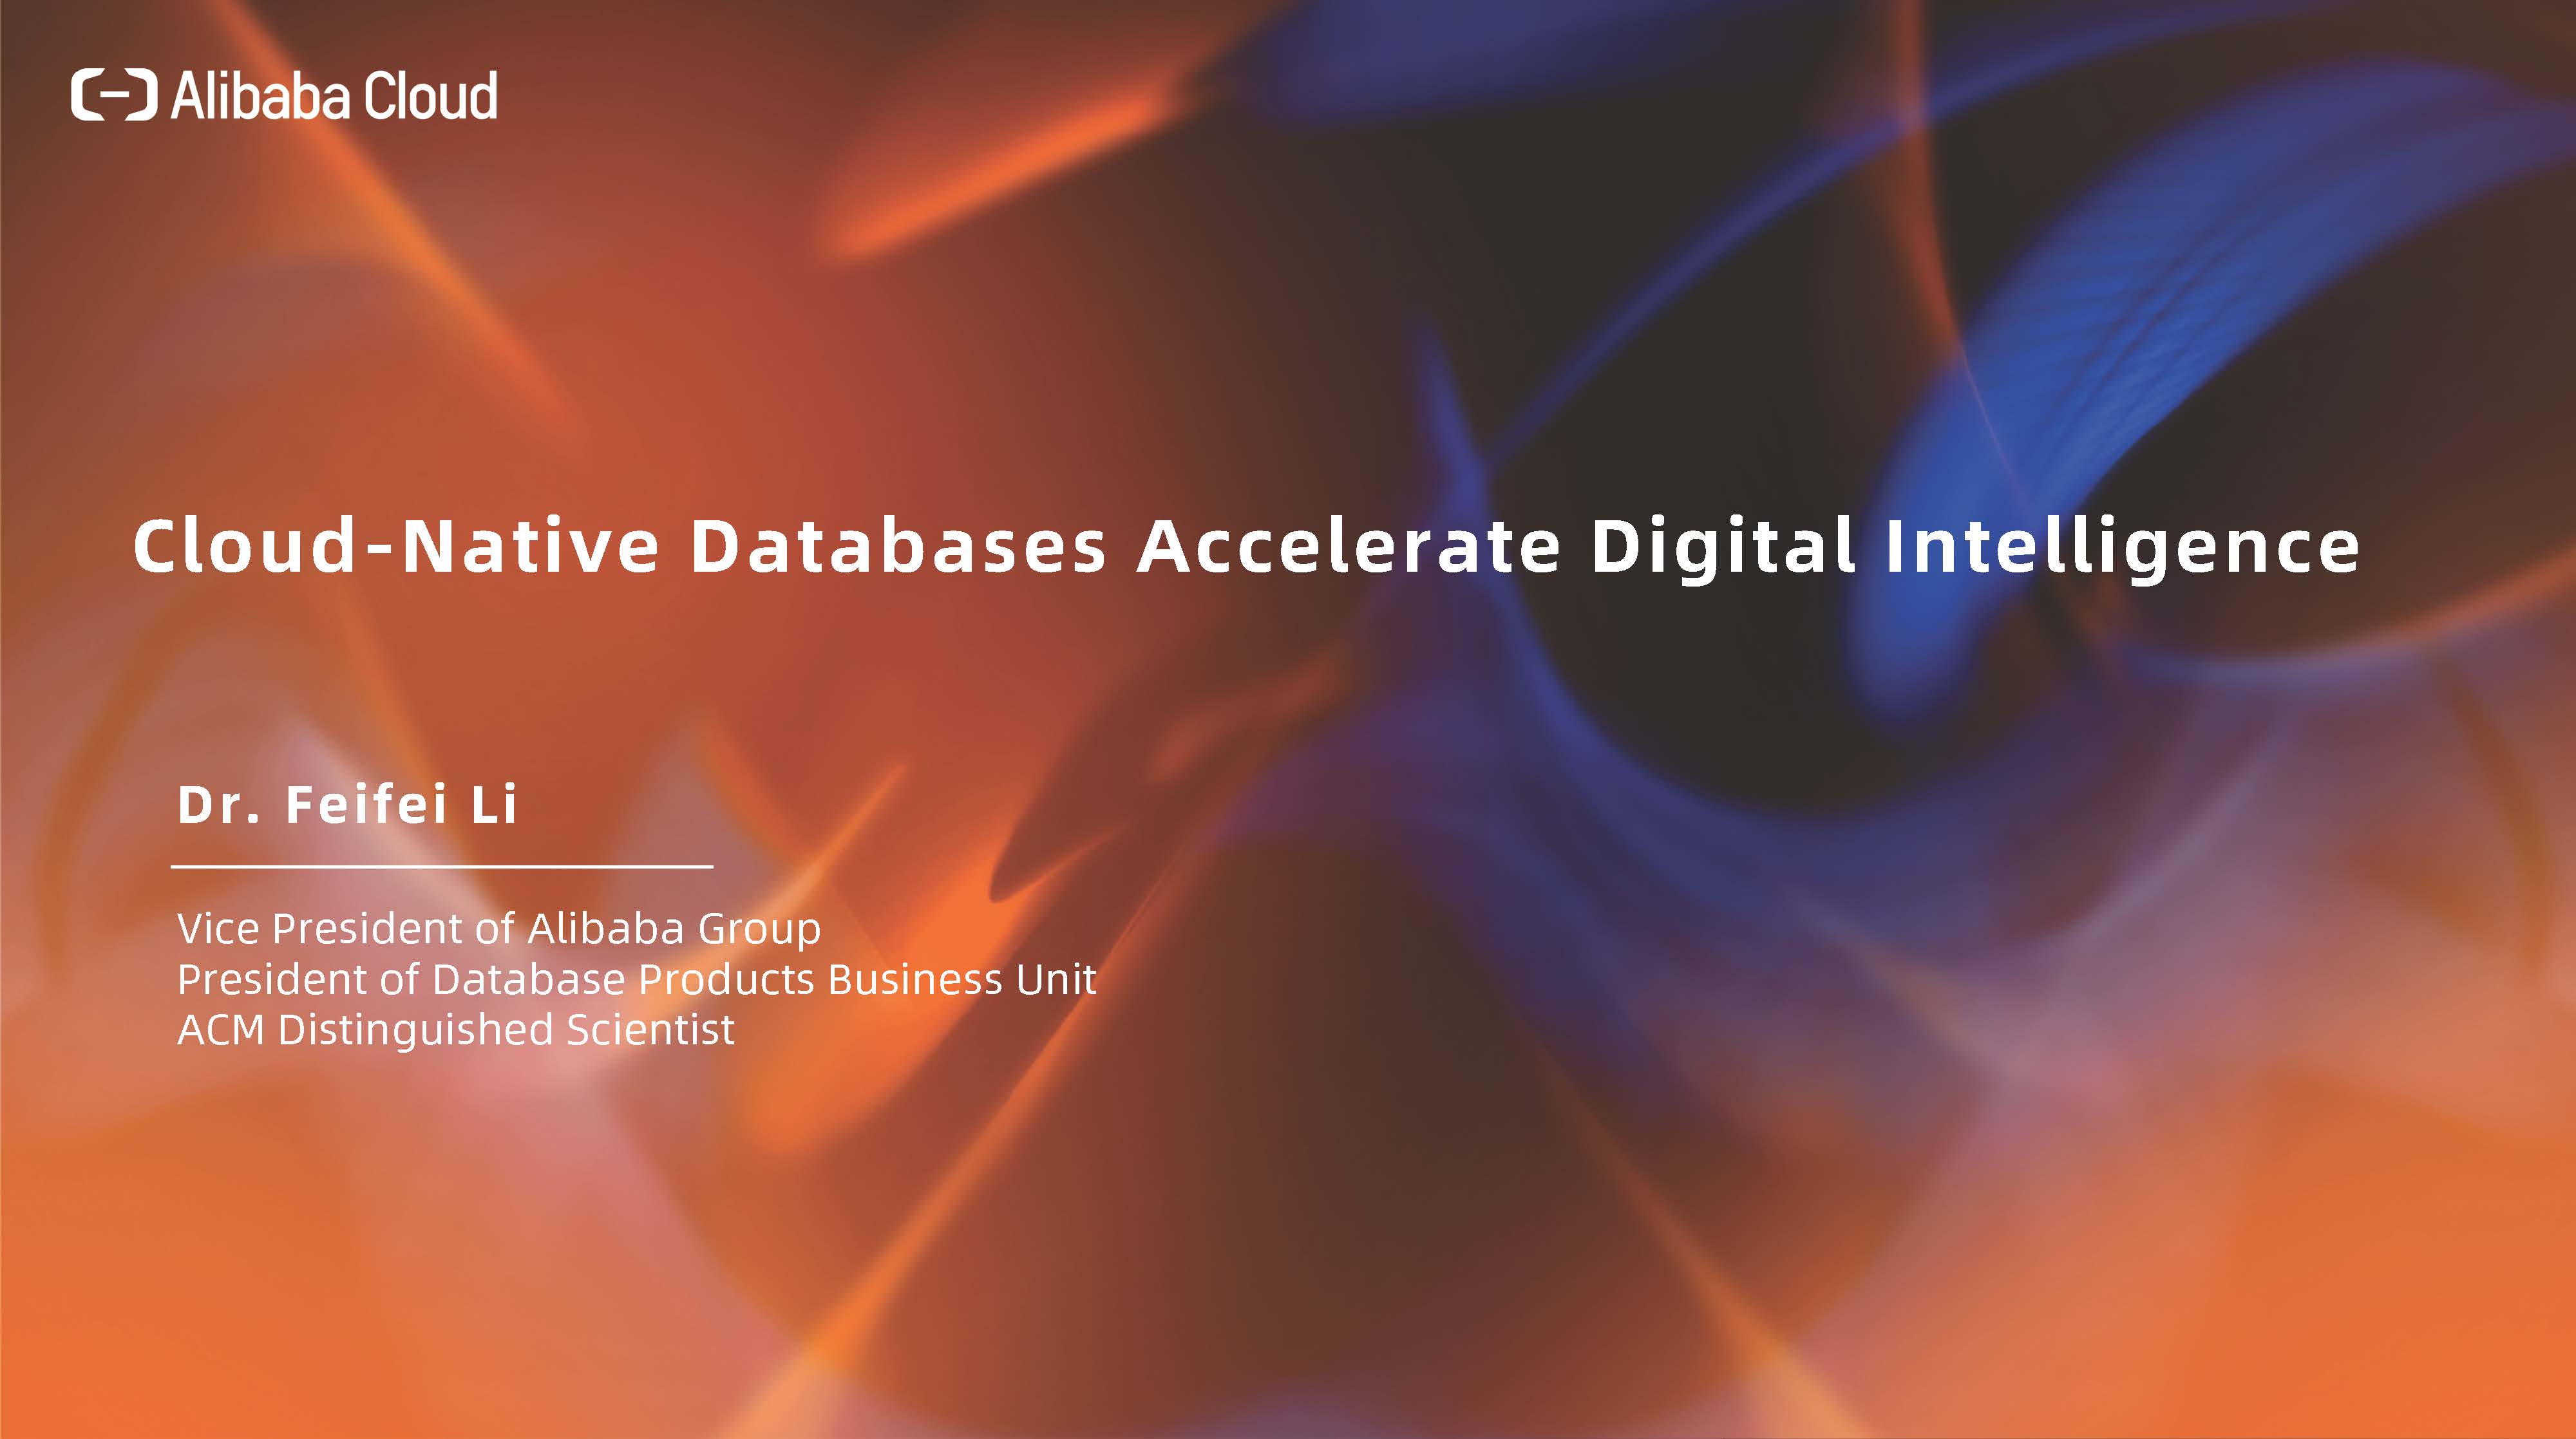 Alibaba-Cloud-Virtual-Media-Briefing-Materi-Presentasi-Dr.-Feifei-Li-cloud-native